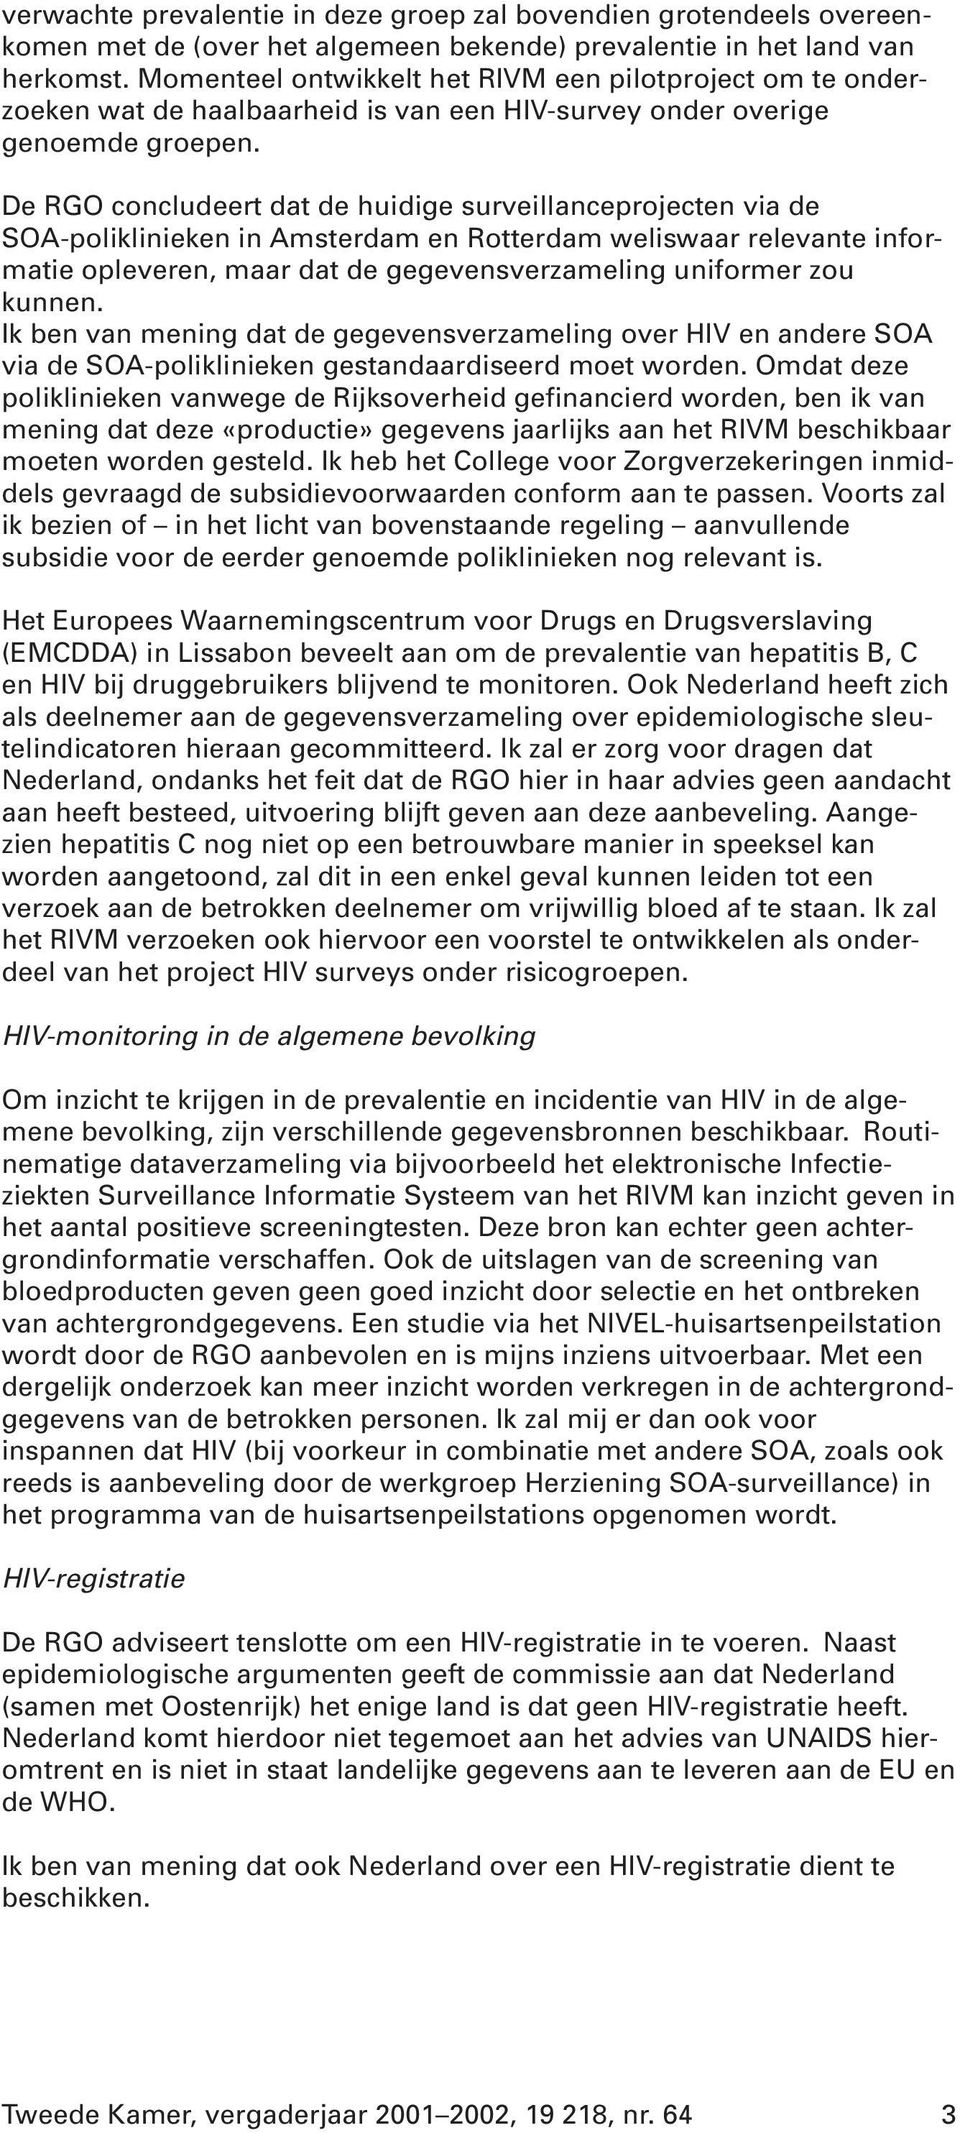 De RGO concludeert dat de huidige surveillanceprojecten via de SOA-poliklinieken in Amsterdam en Rotterdam weliswaar relevante informatie opleveren, maar dat de gegevensverzameling uniformer zou